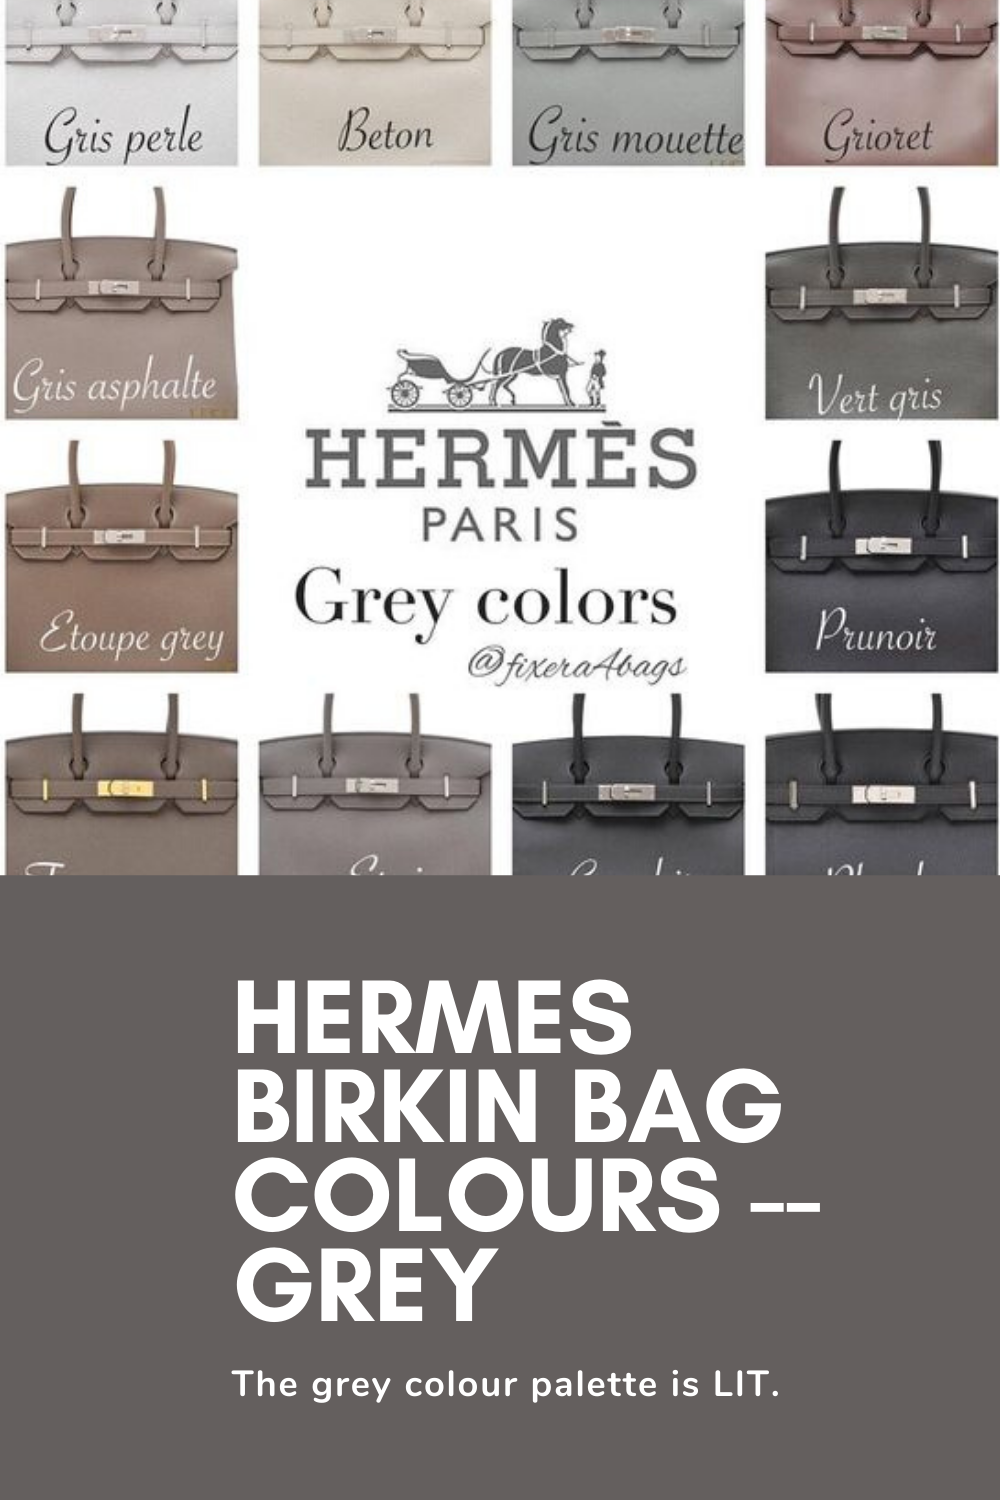 HERMES BIRKIN BAG COLOURS -- BROWNS(1)